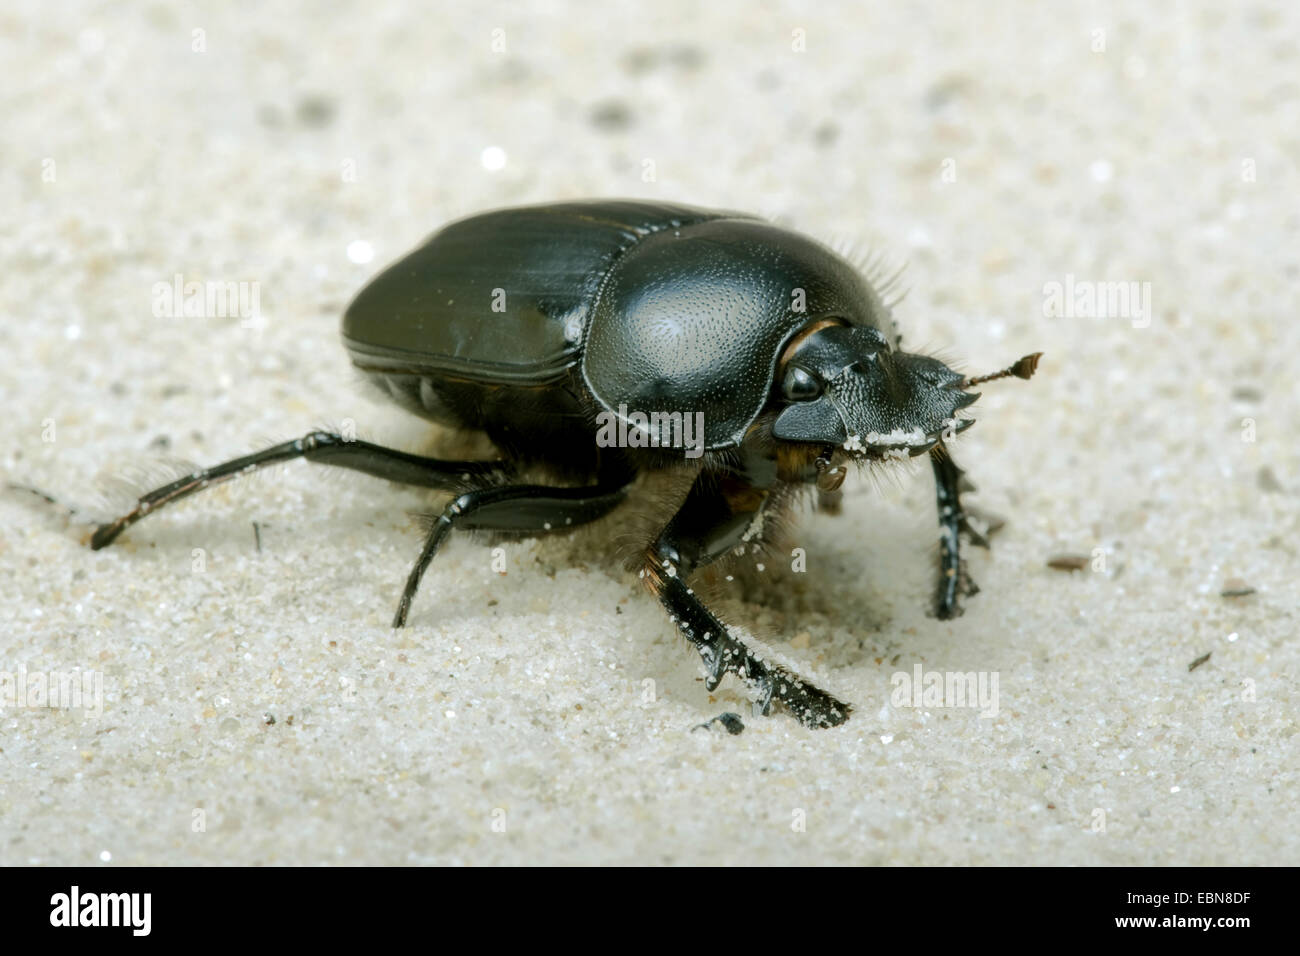 Escarabajo sagrado escarabajo escarabajo egipcio (Scarabaeus sacer), vista lateral Foto de stock